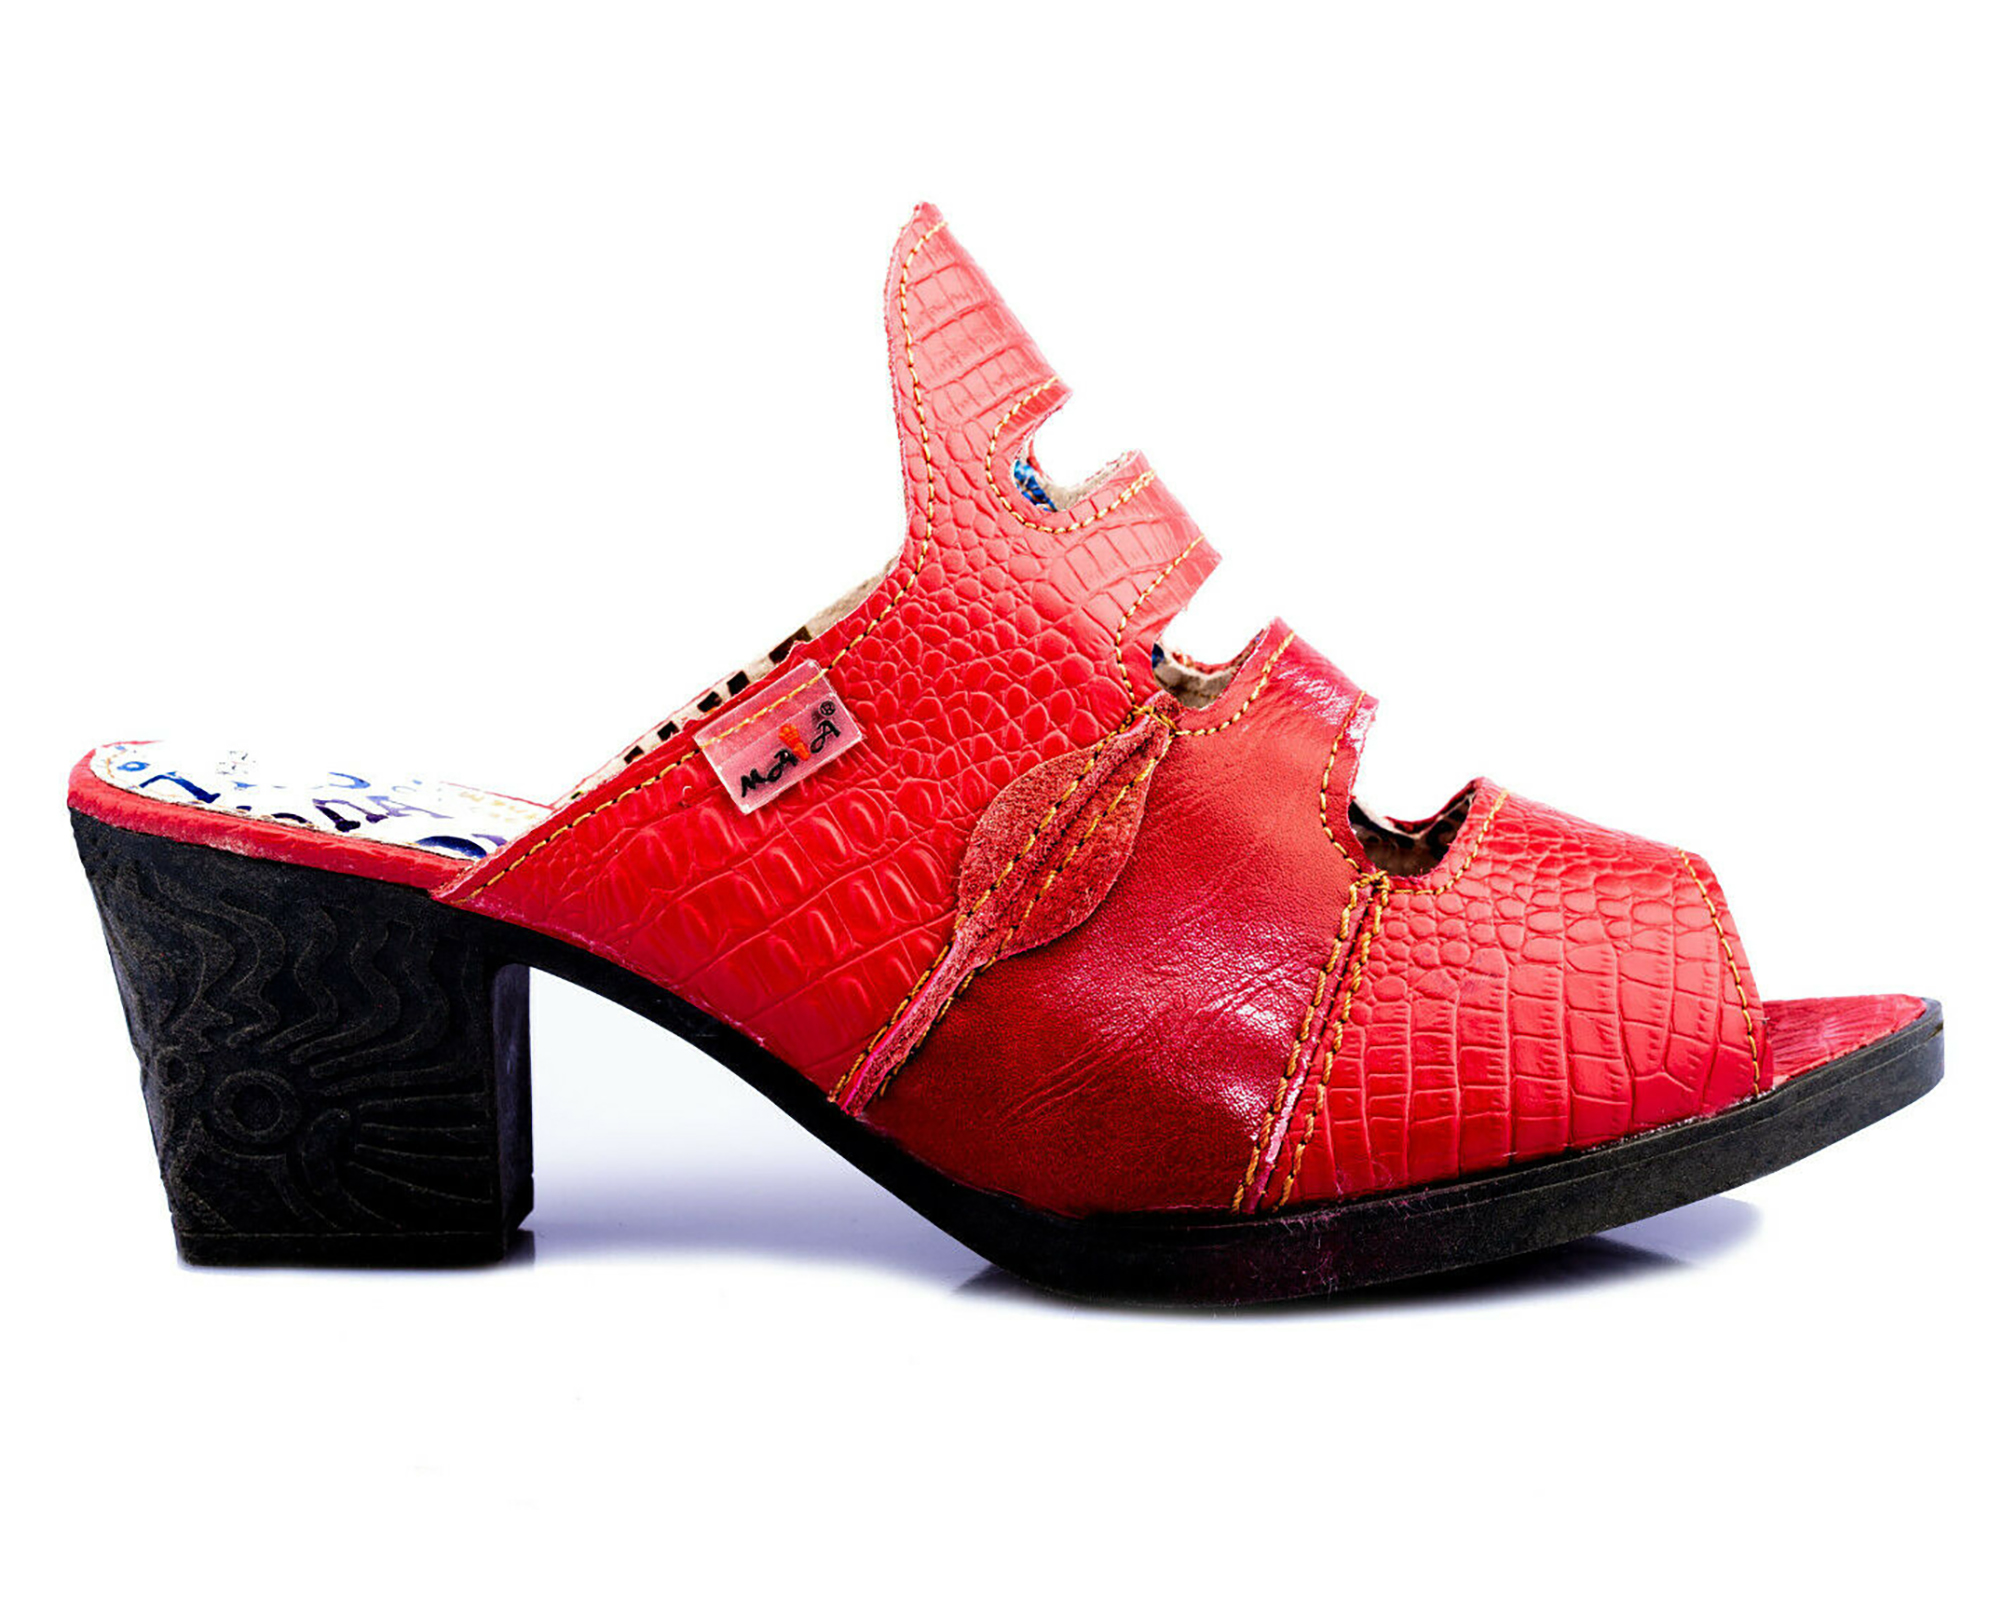 Damen Sandalen | TMA 1171 | elegante Sandaletten | Pumps | Echtleder | rot | Größen 36 - 42